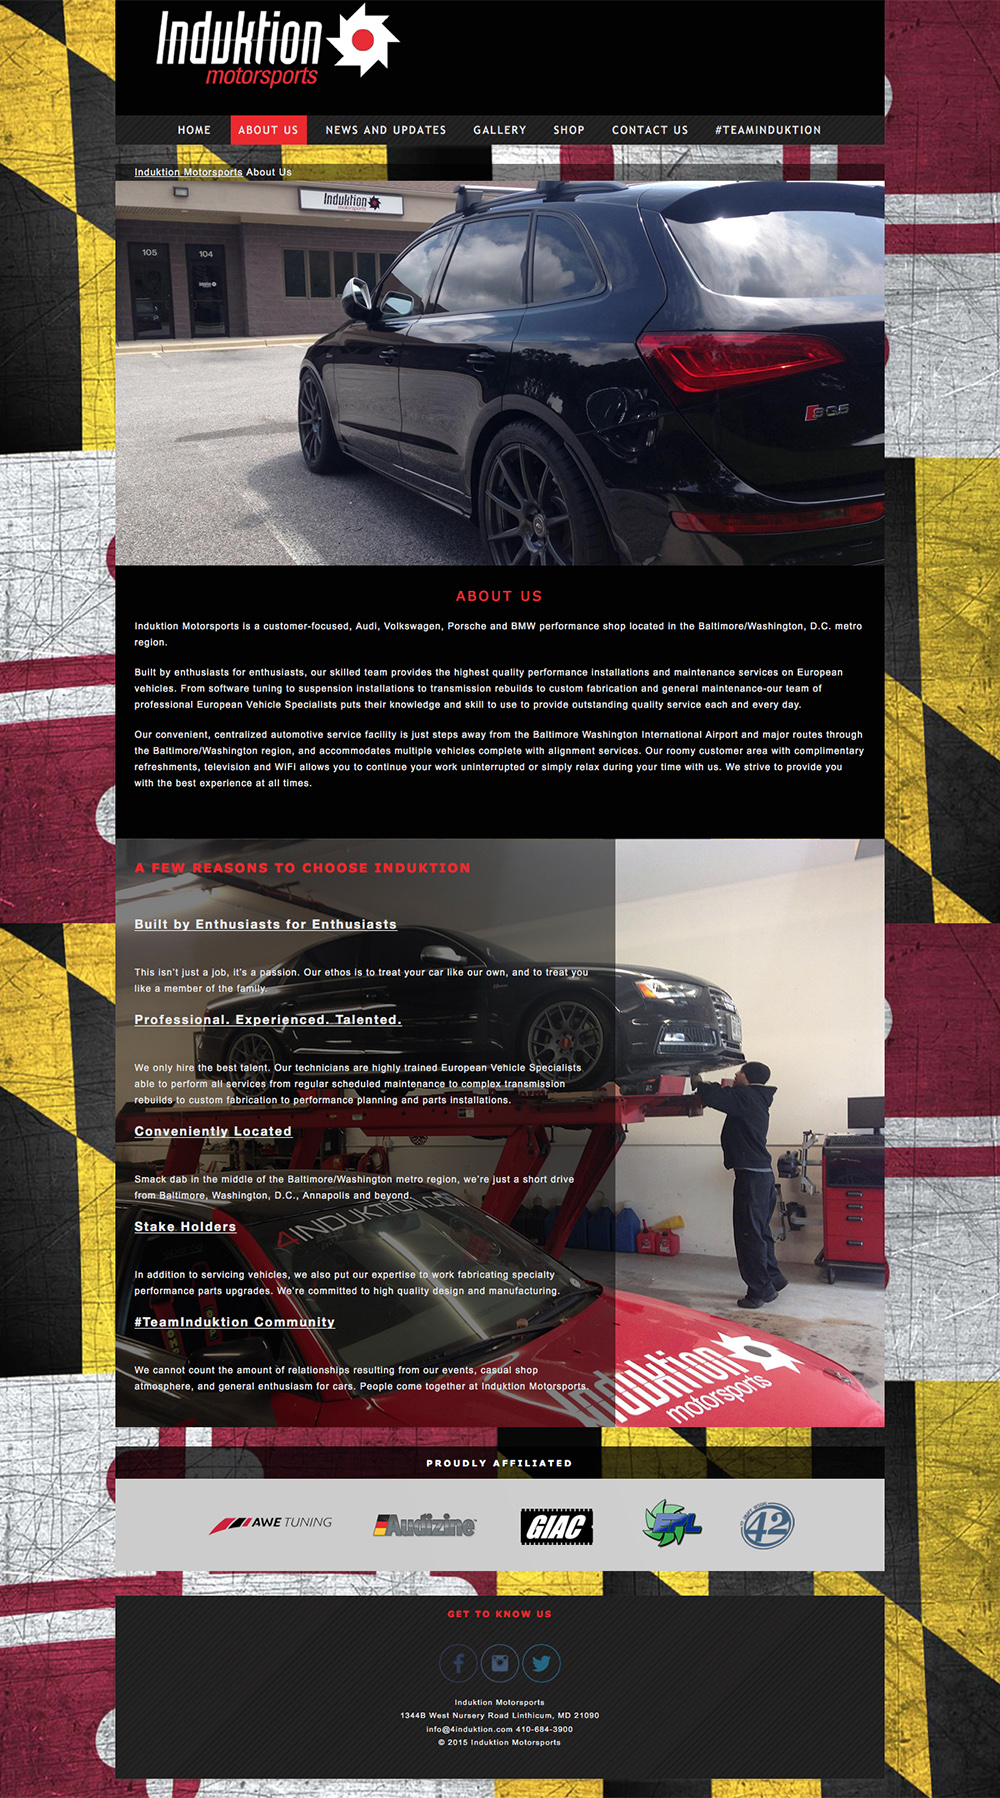 Induktion Motorsports Website Design 2015